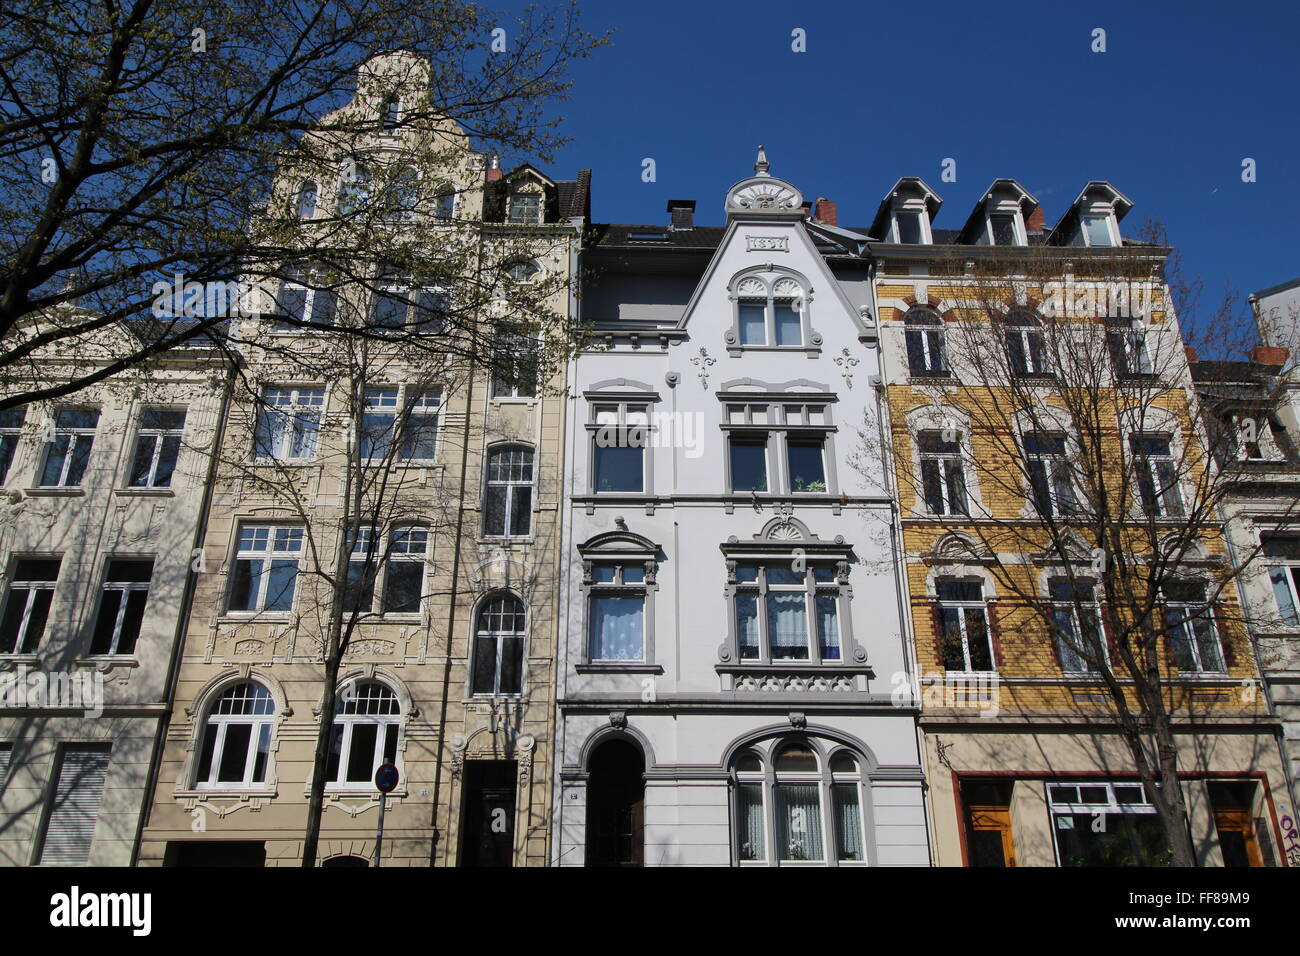 Les bâtiments anciens de la vieille ville de Bonn, Allemagne Banque D'Images